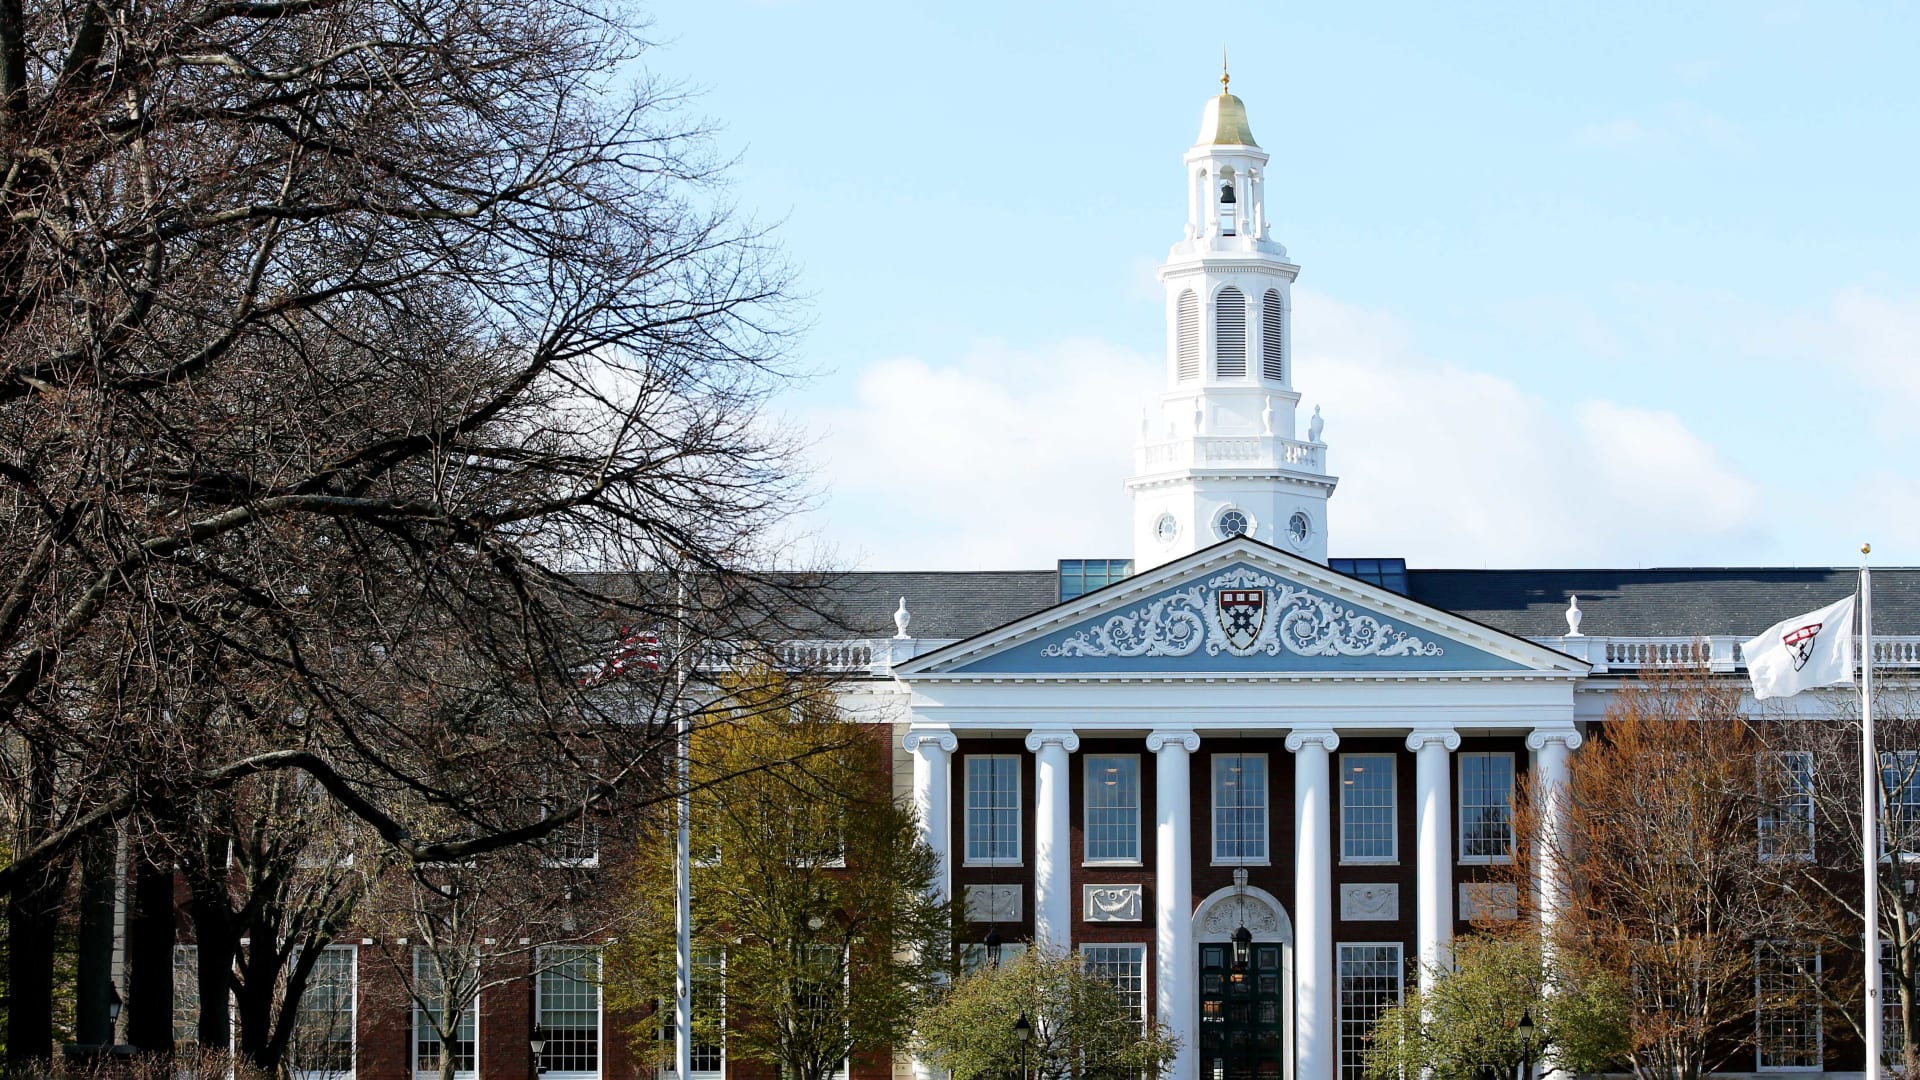 Harvard University in Cambridge, Massachusetts, on April 22, 2020.